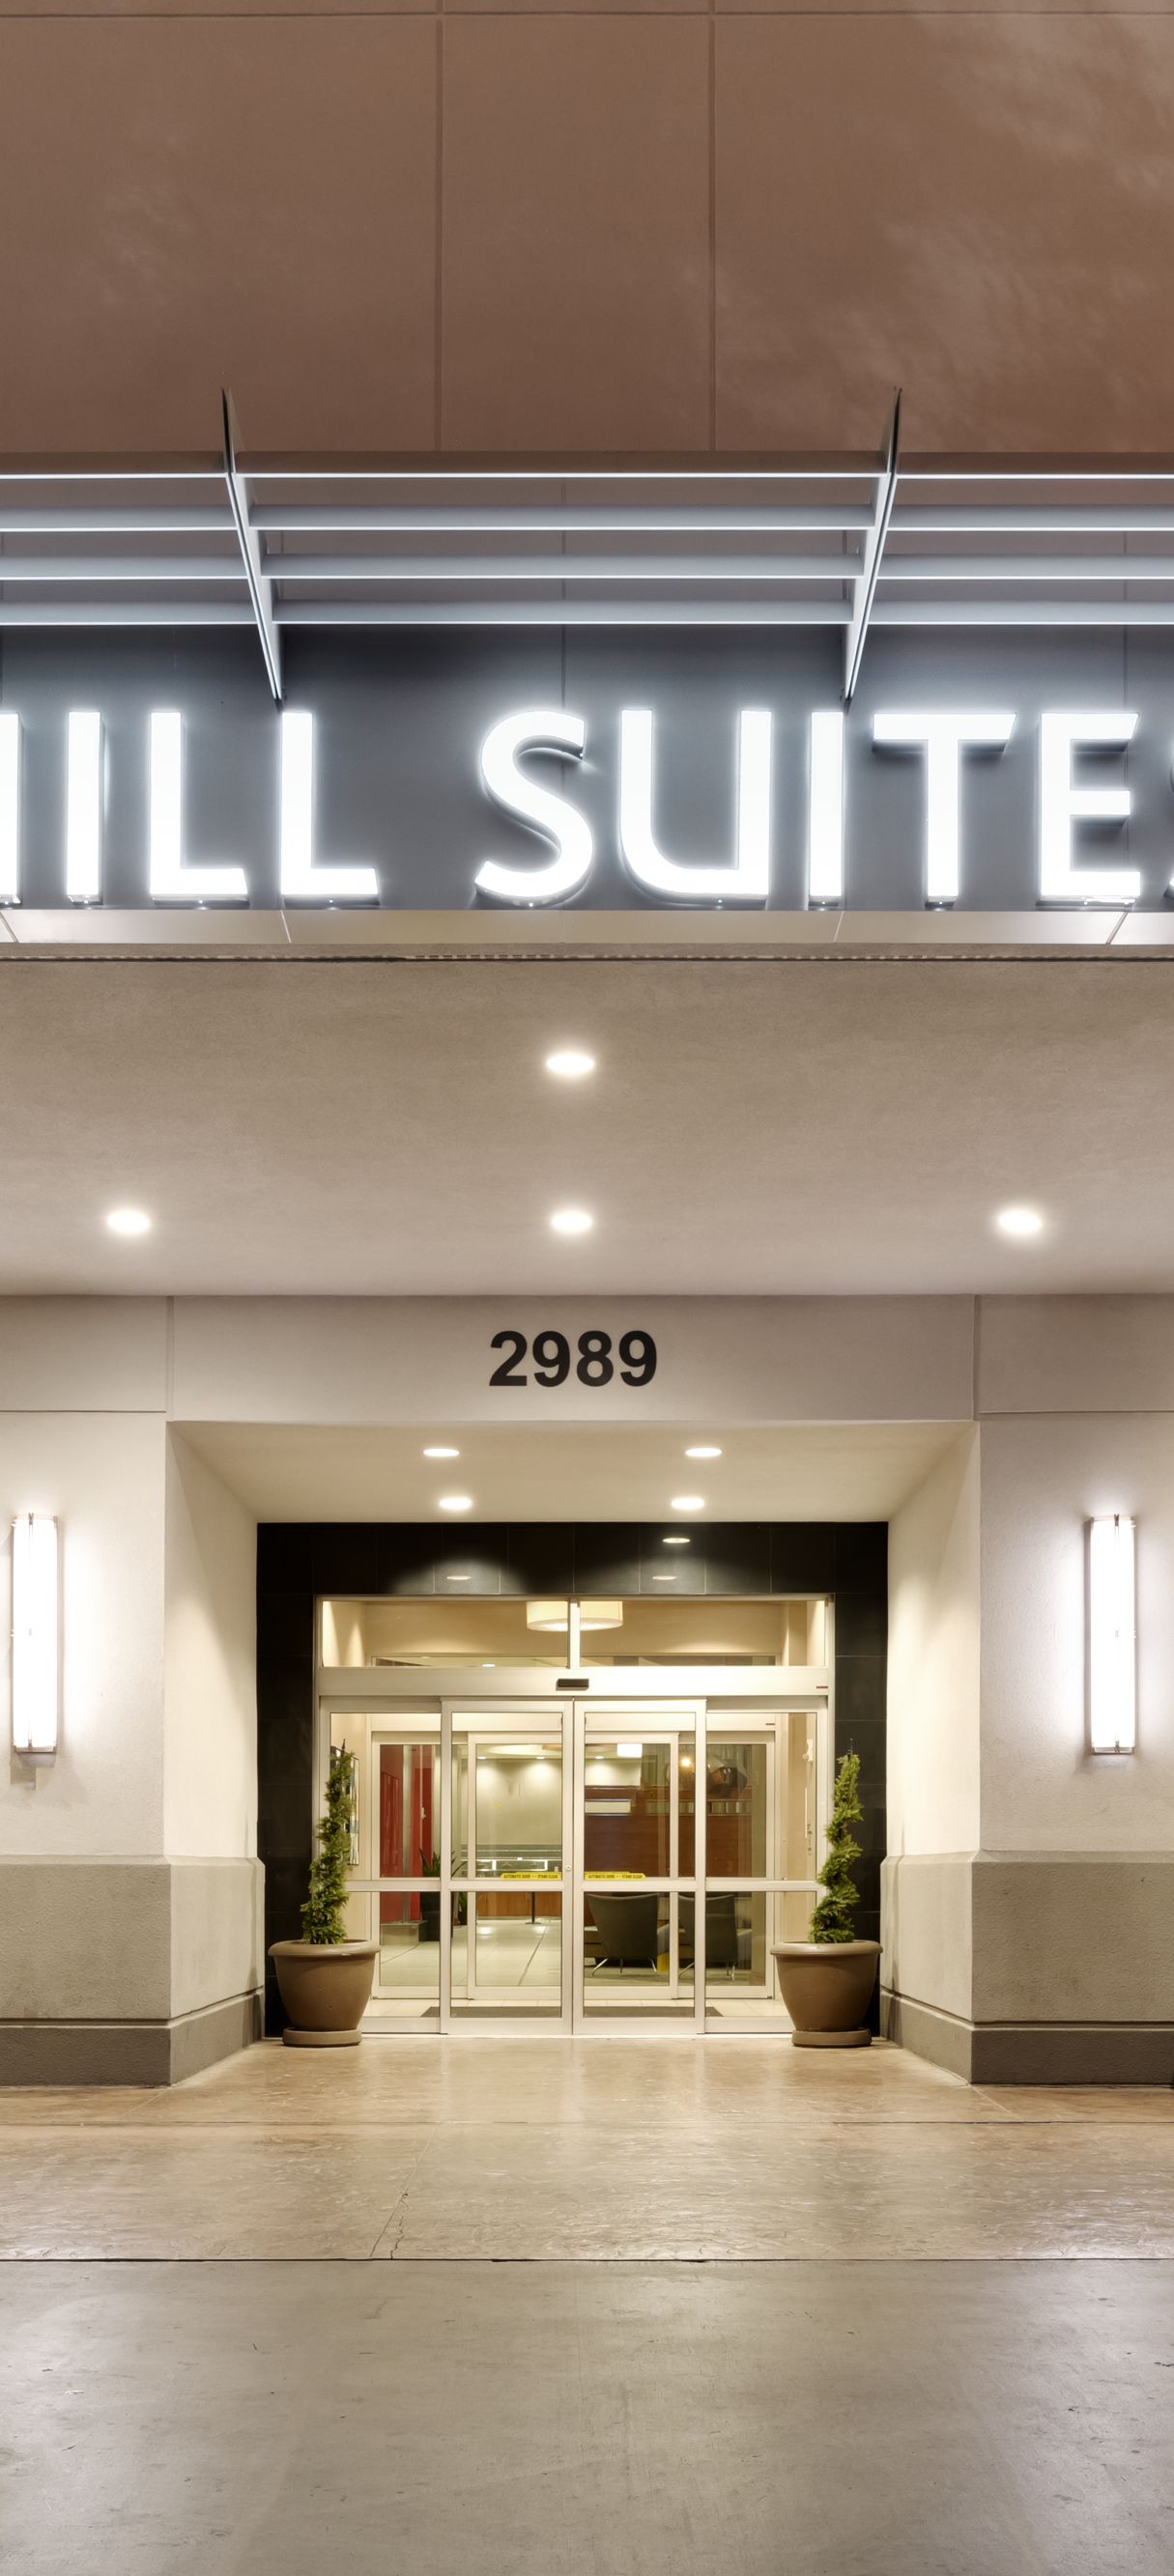 Hotel SpringHill Suites by Marriott Las Vegas Convention Center, Las Vegas  